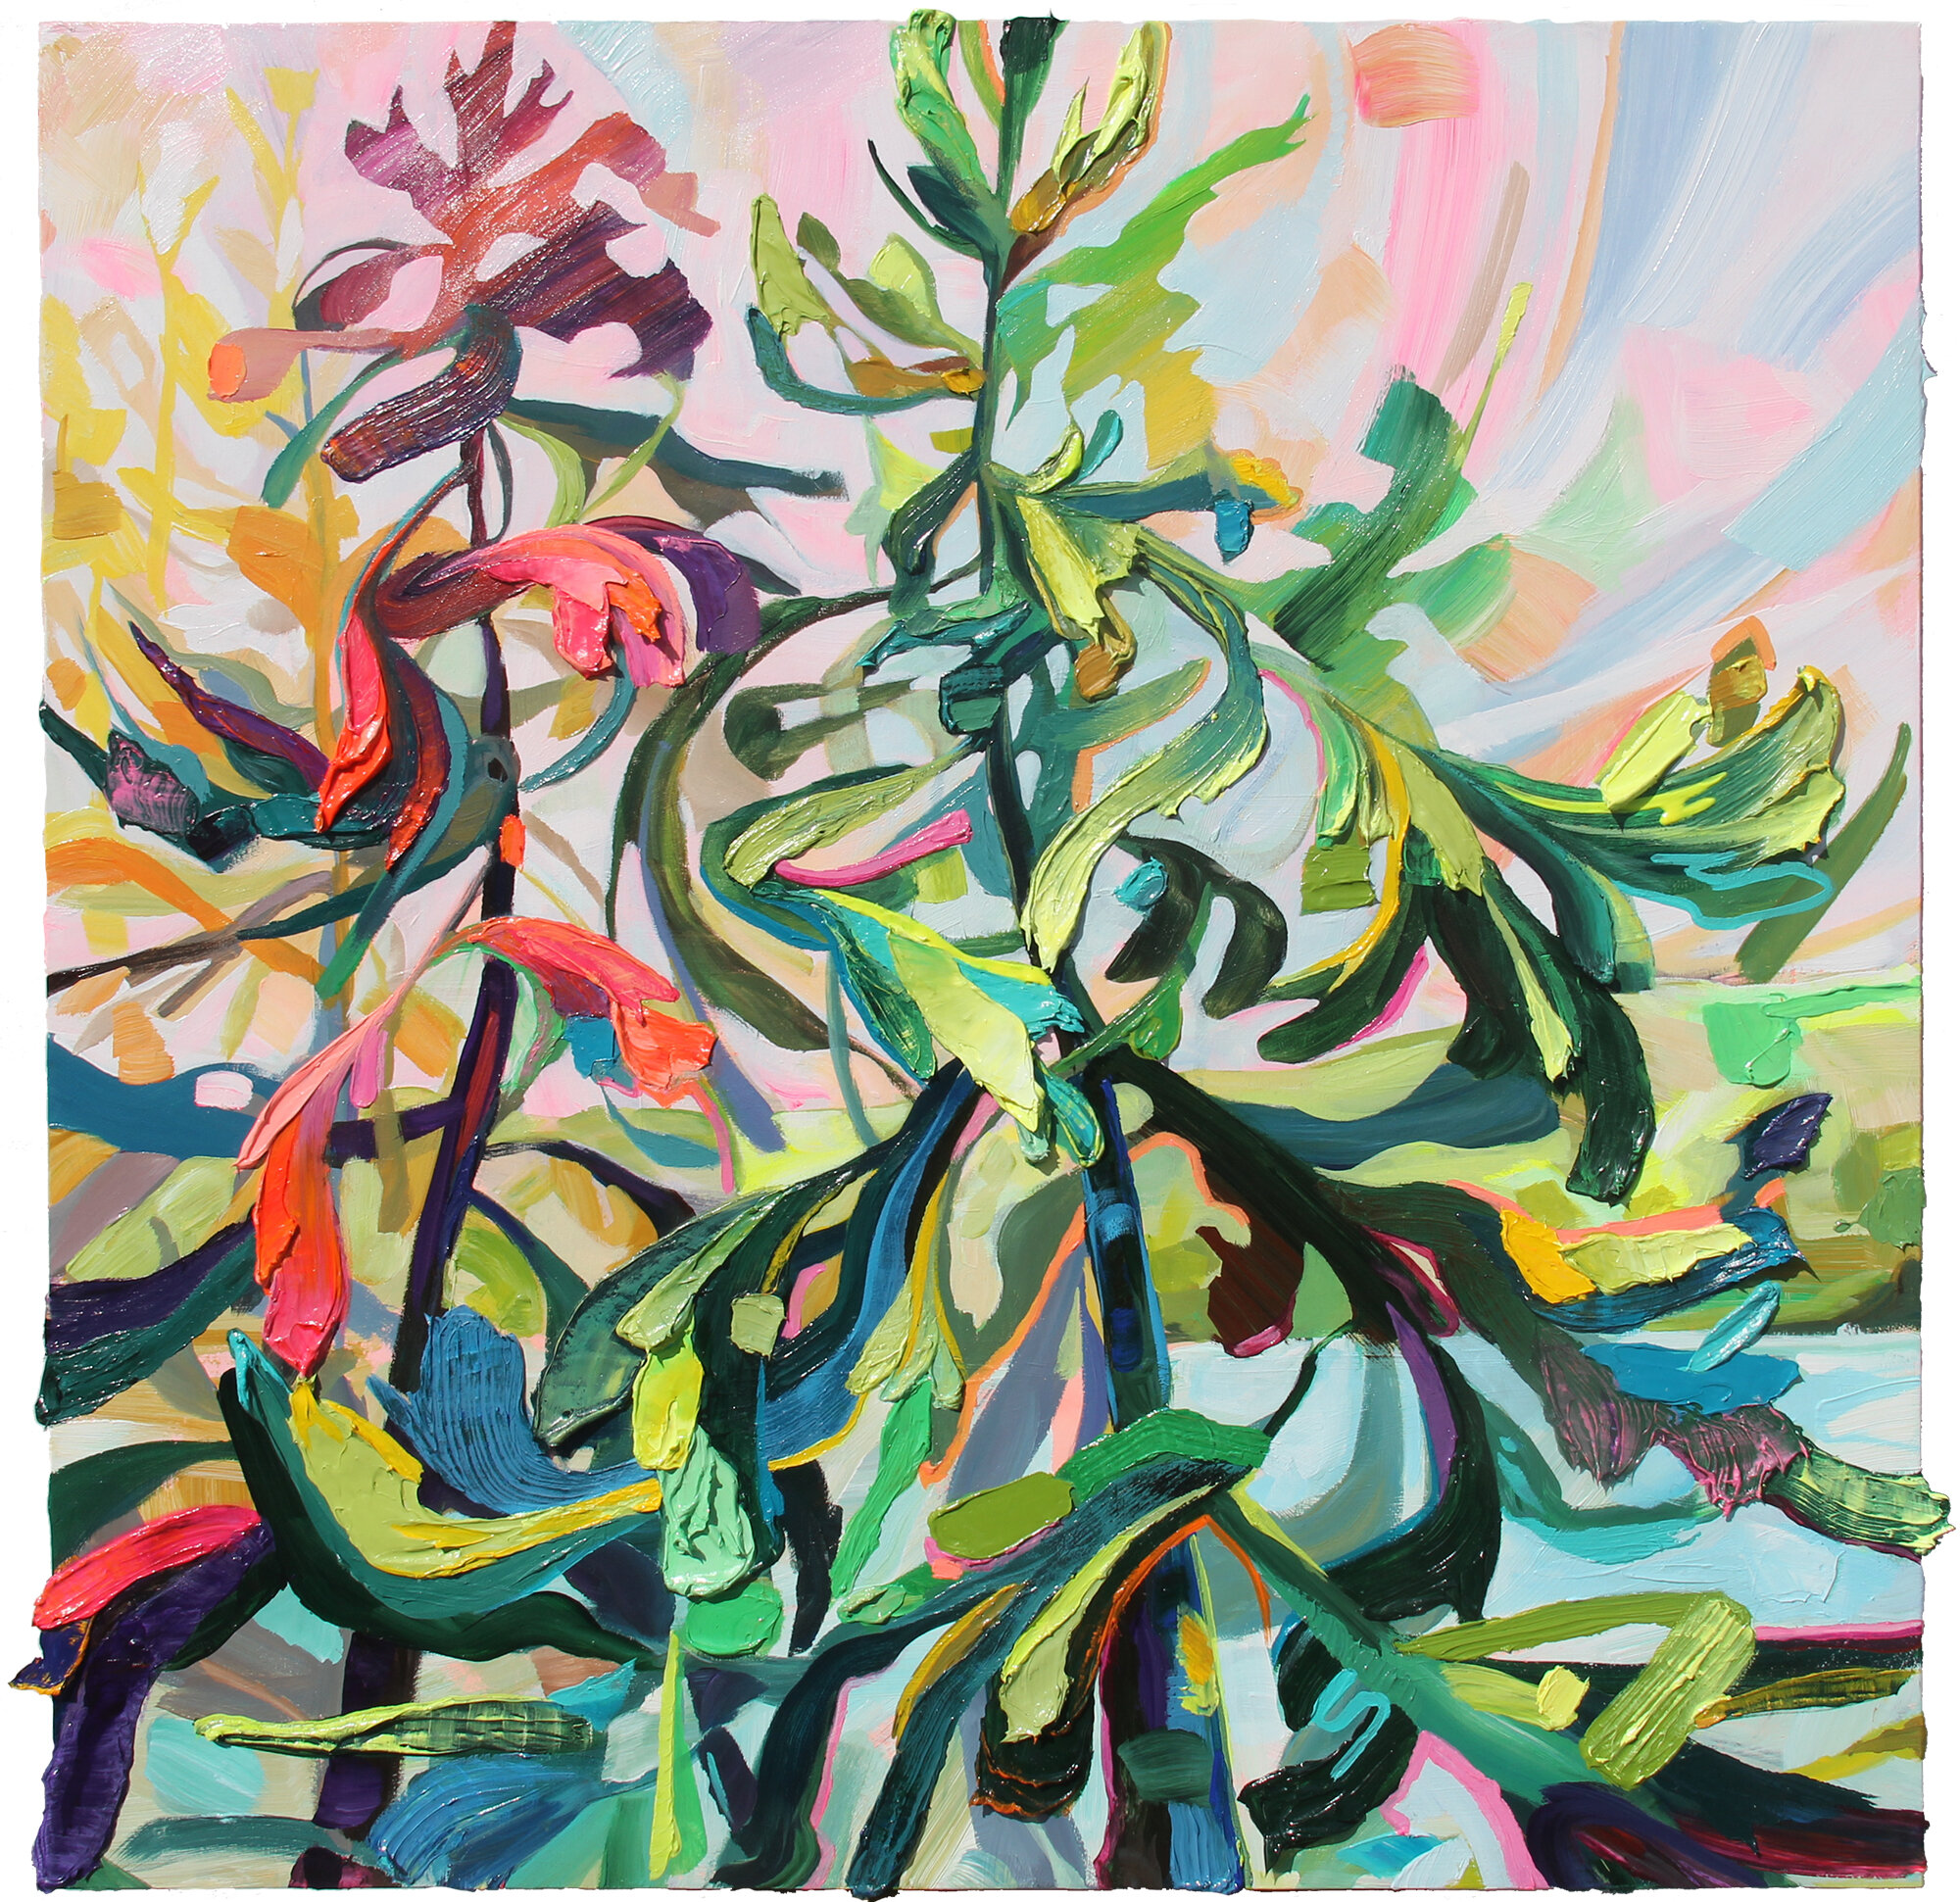 Dancing Trees, 36 x 36", acrylic on wood panel, 2021